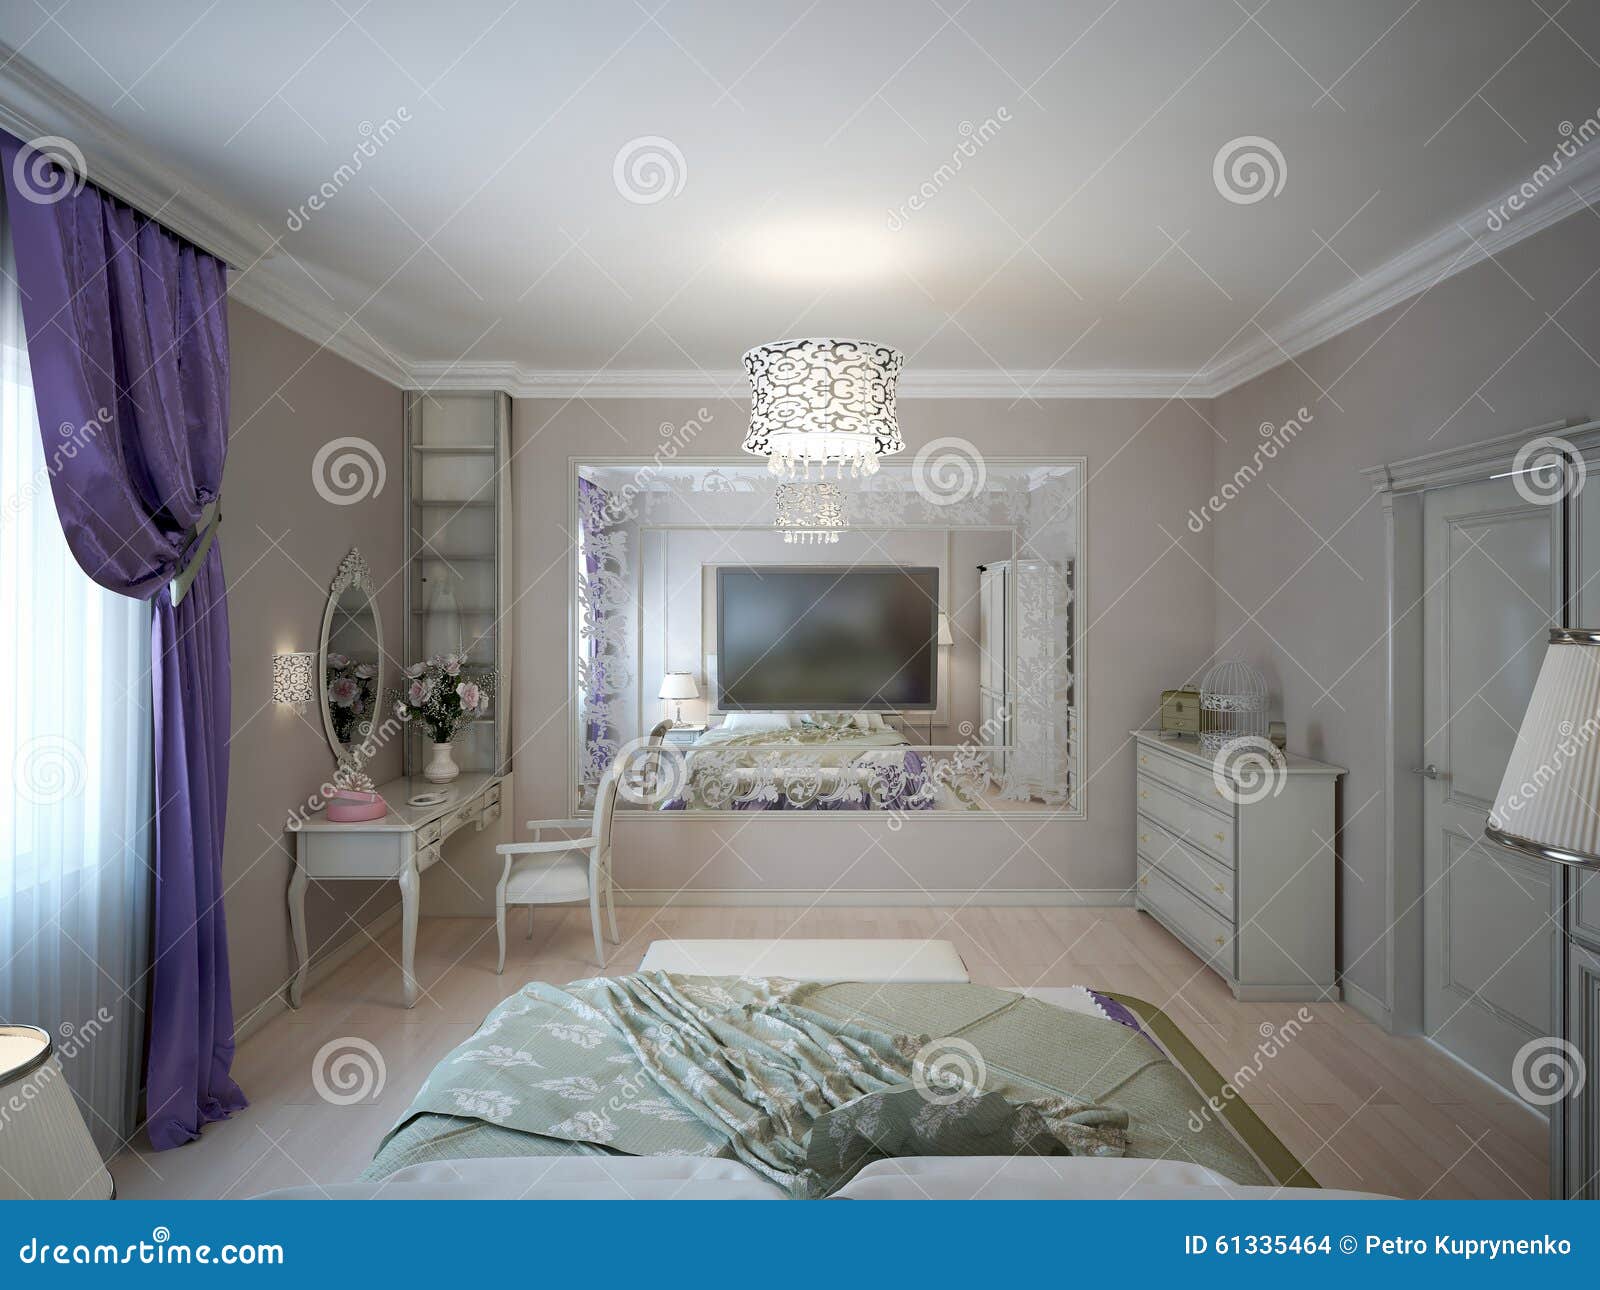 bedroom neoclassic style